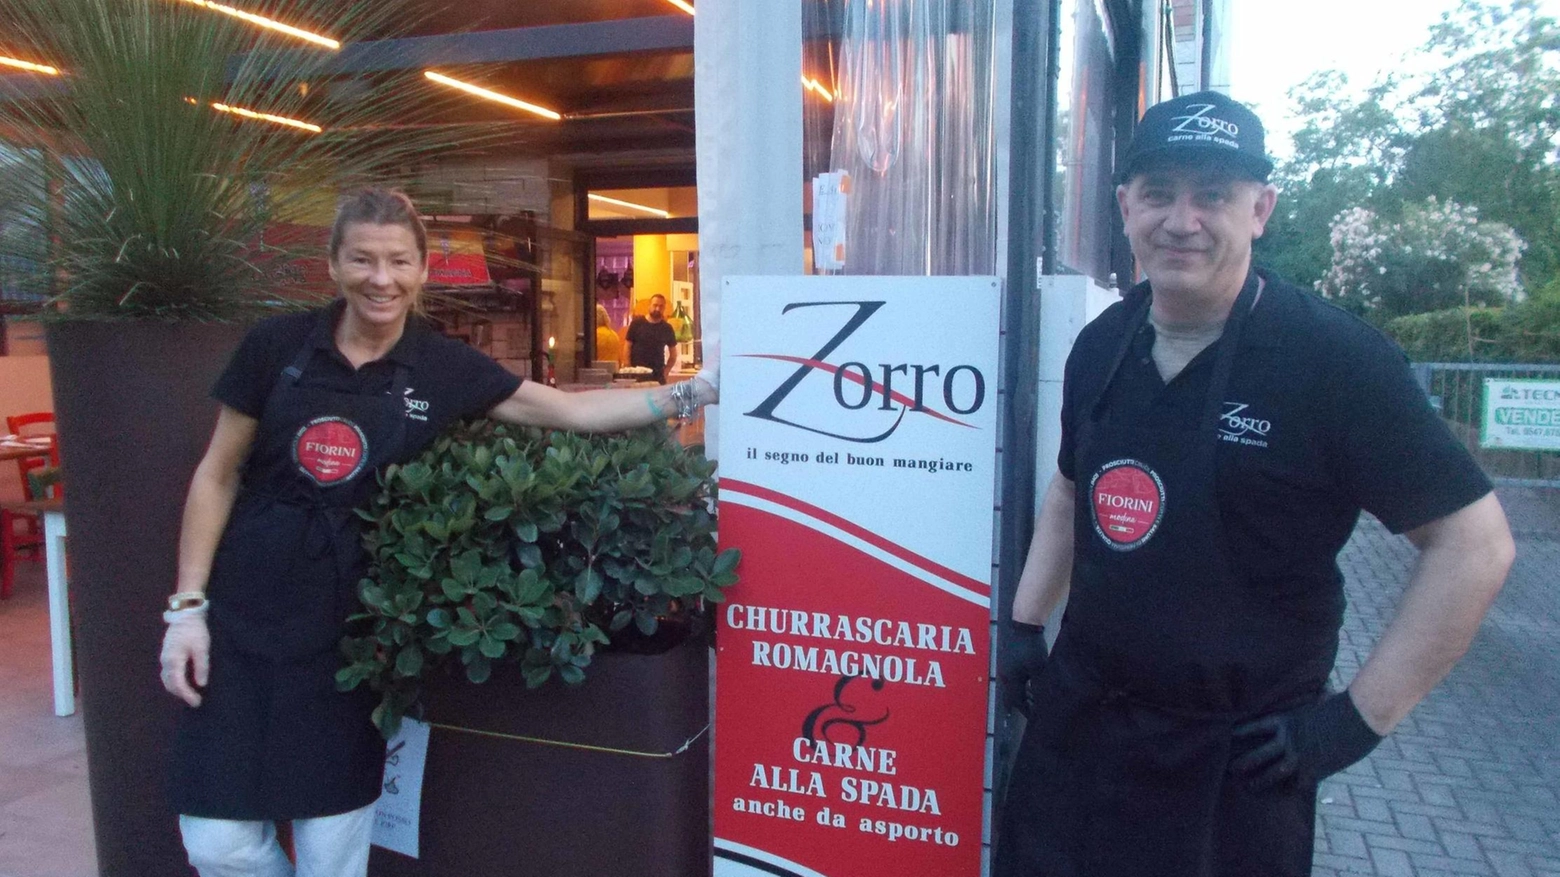 ’Zorro il segno del buon mangiare’ festeggia  40 anni di attività